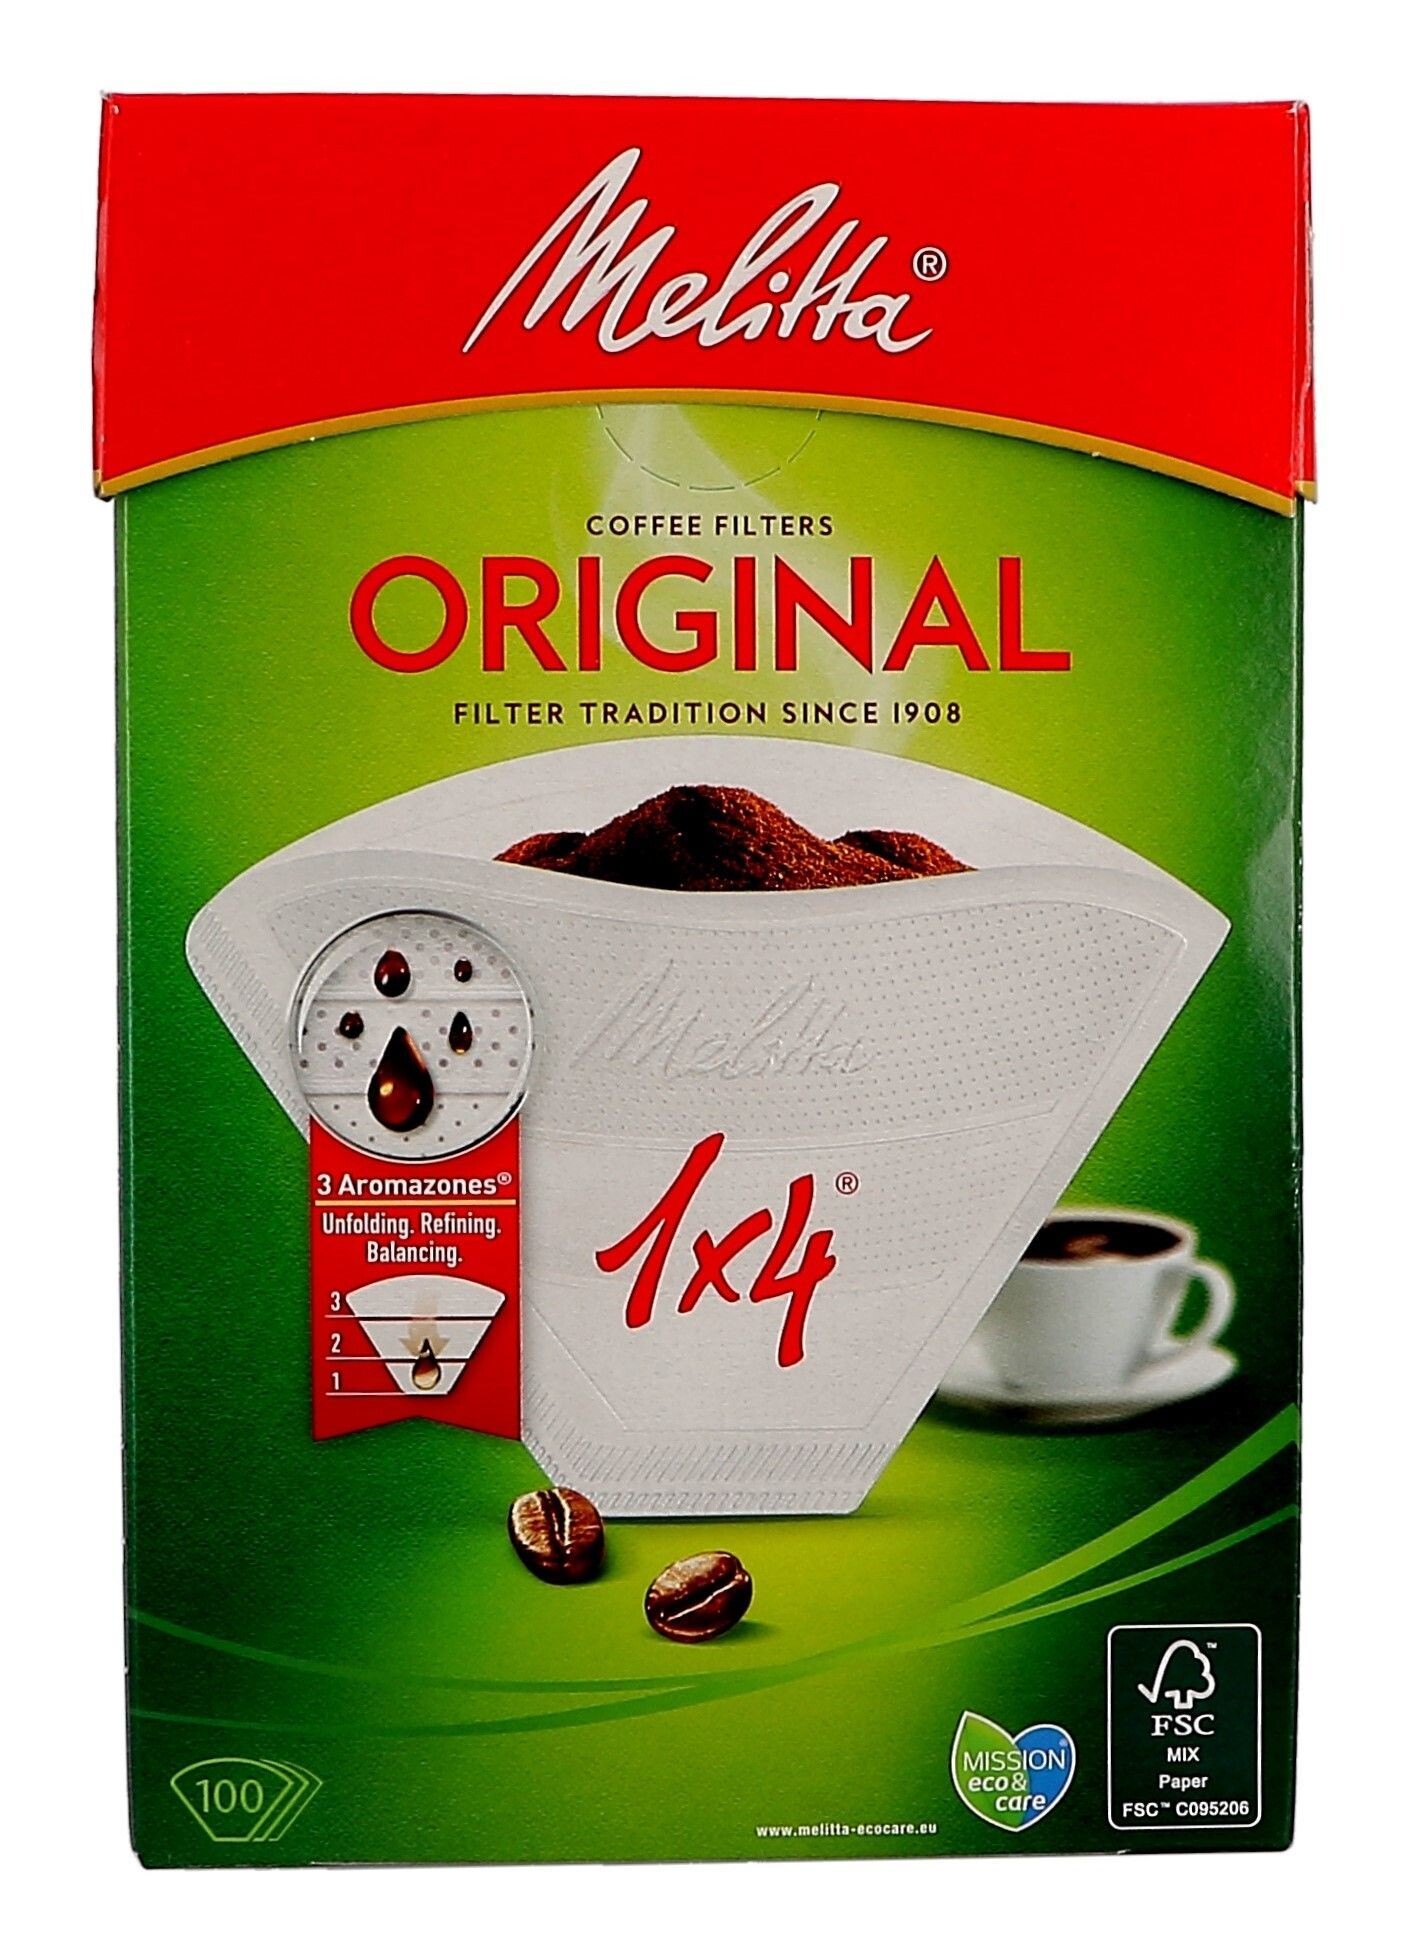 Melitta 1x4 100pcs coffee filter paper